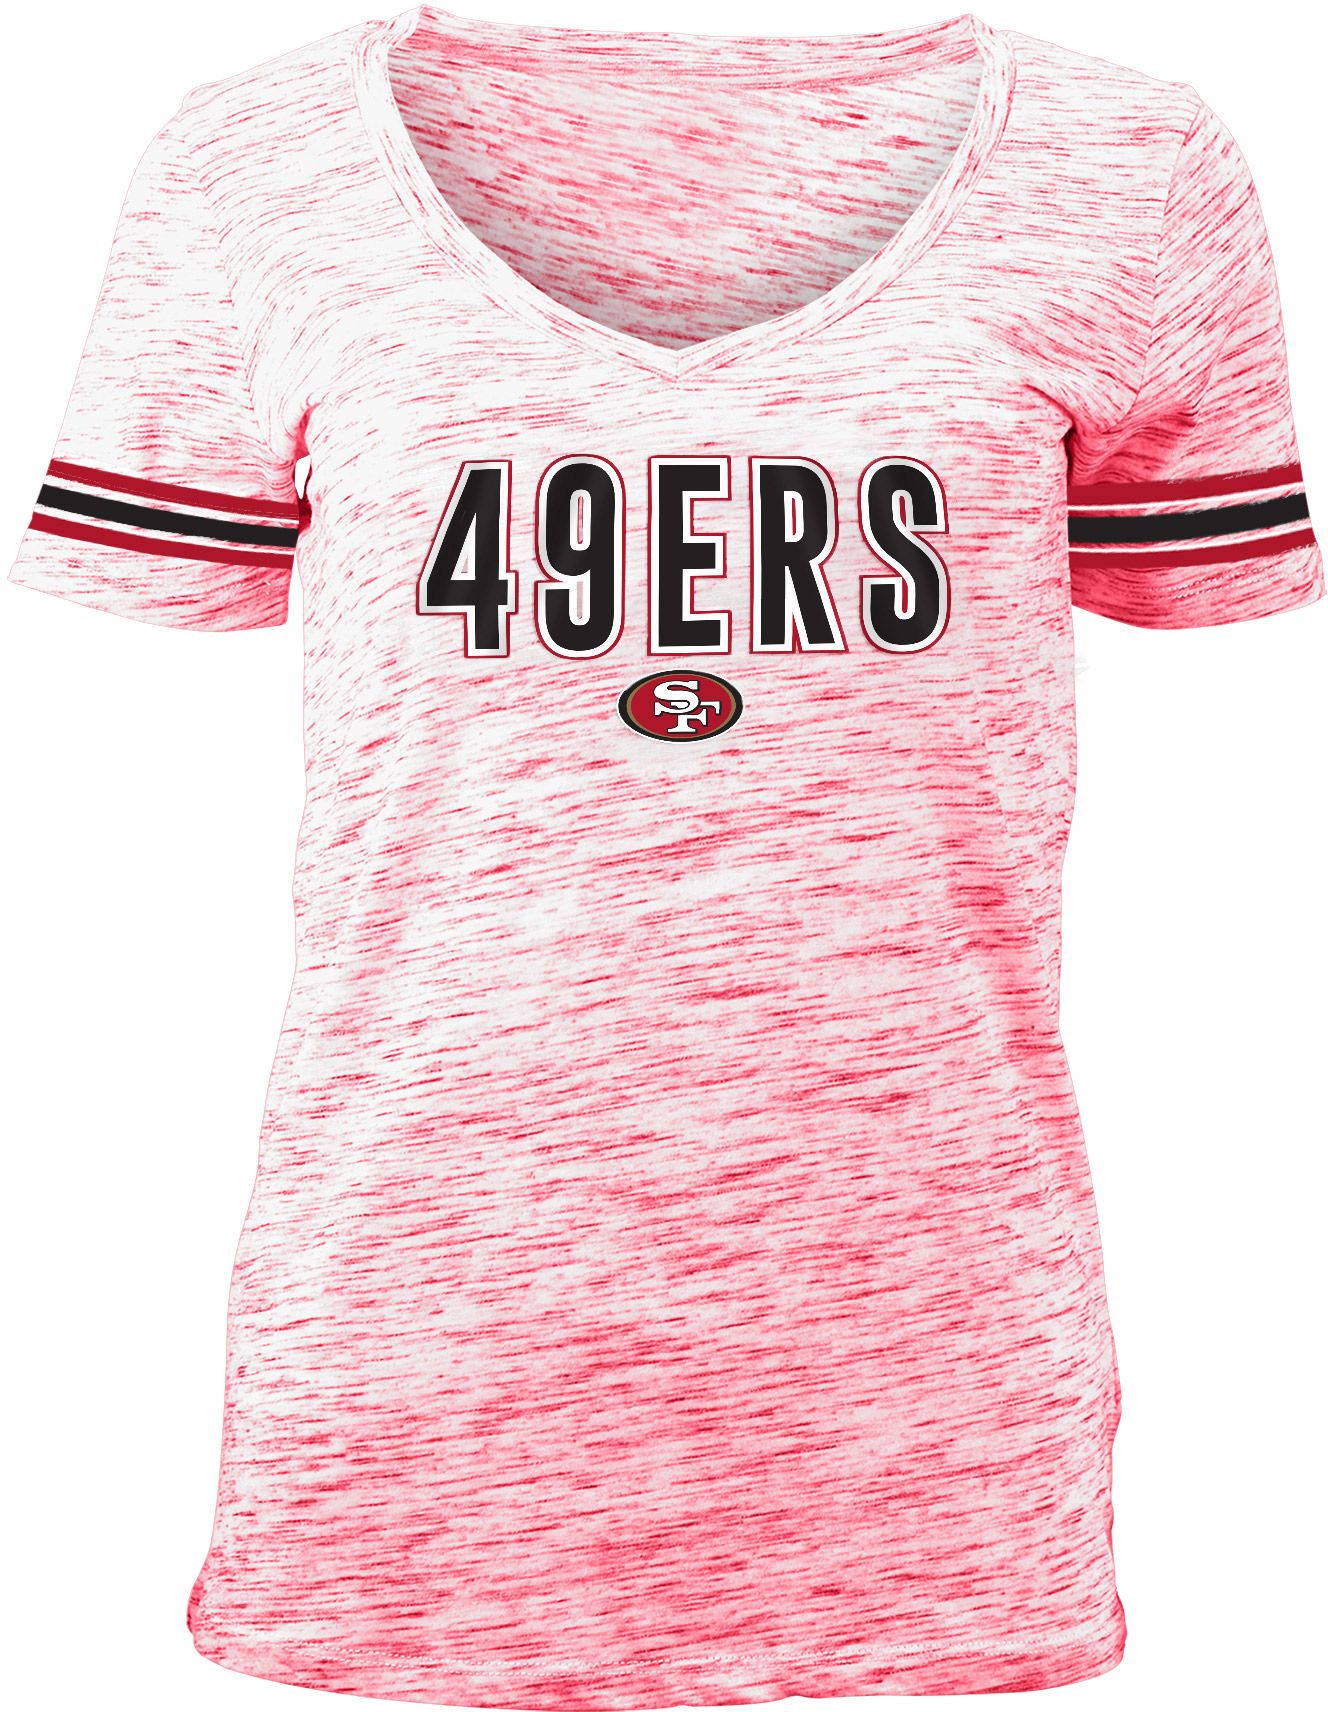 nfl 49ers apparel